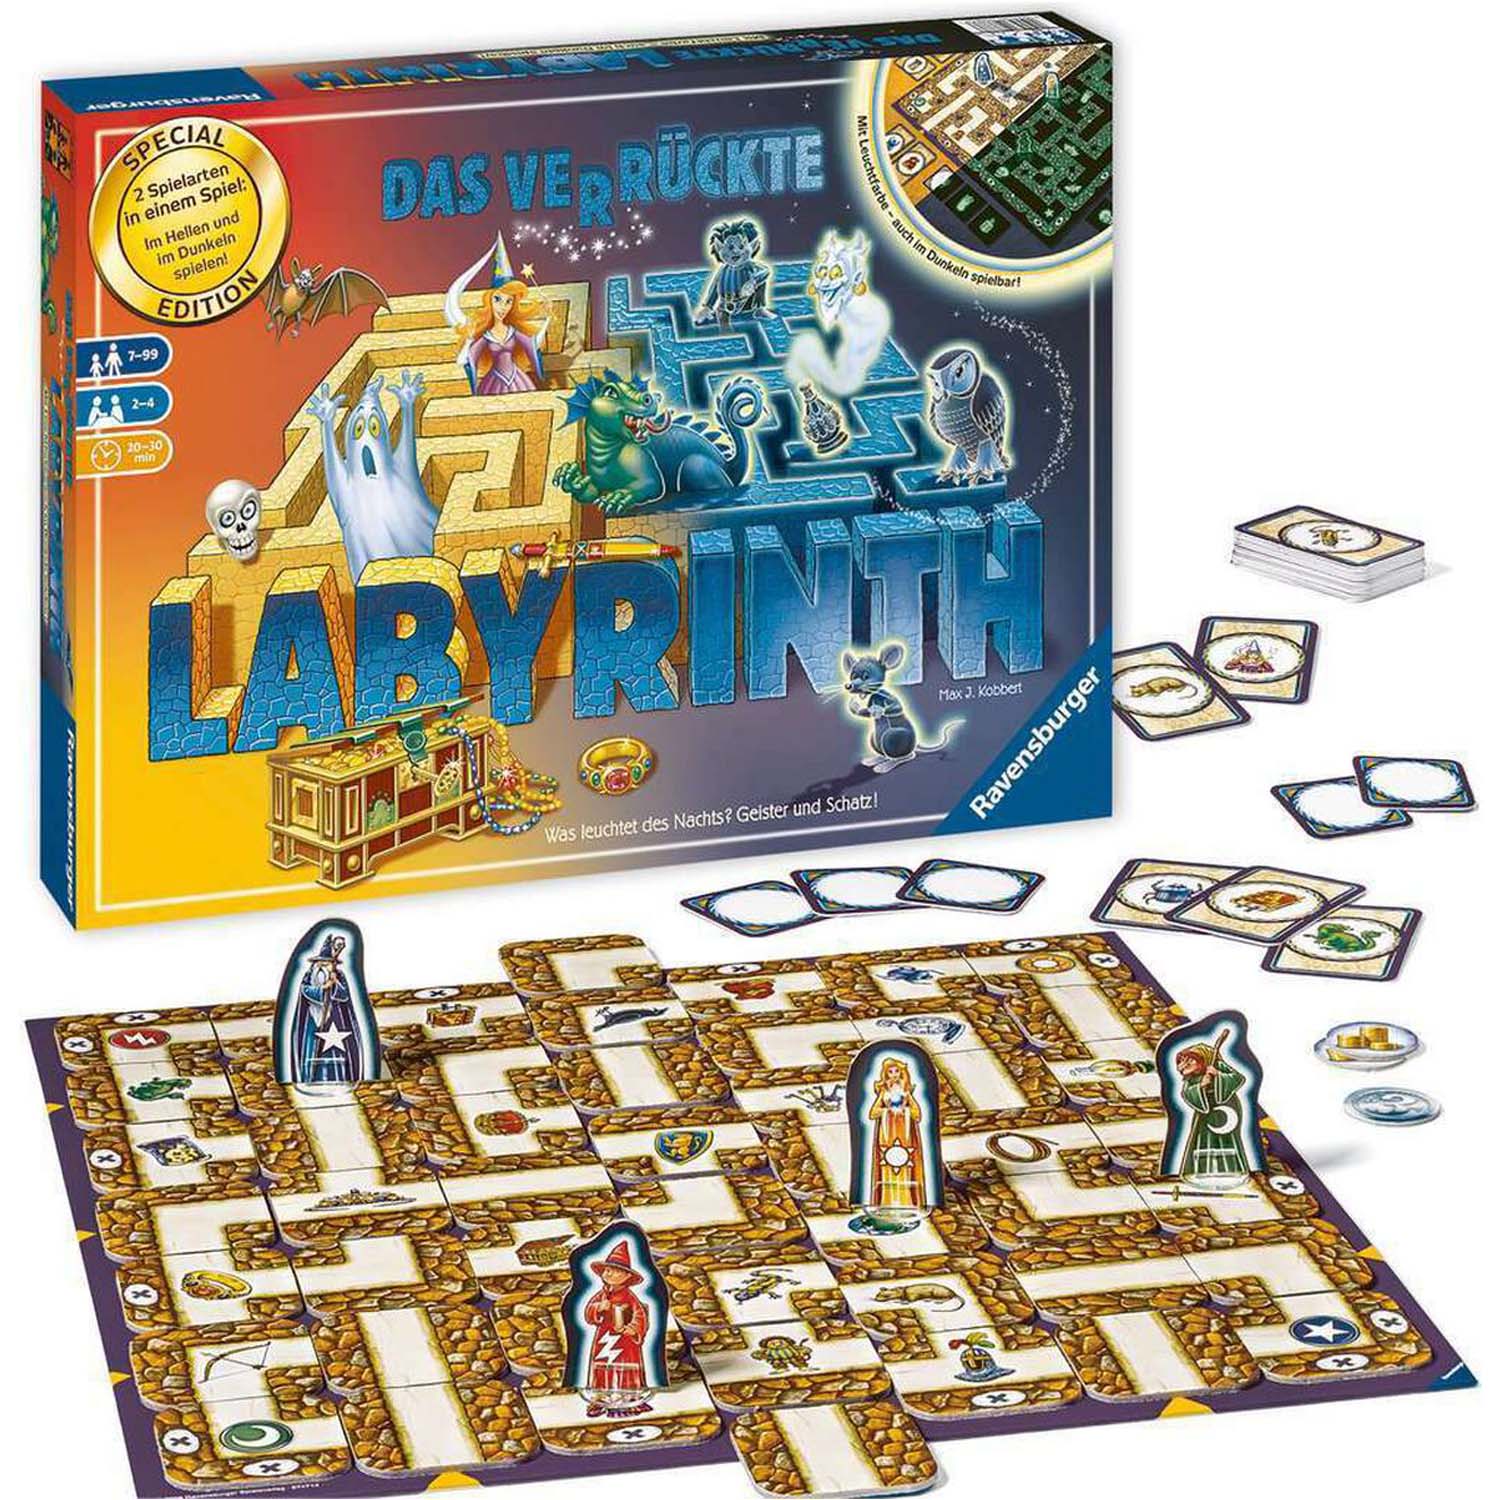 Das verrückte Labyrinth 30 Jahre Jubiläumsedition Inhalt